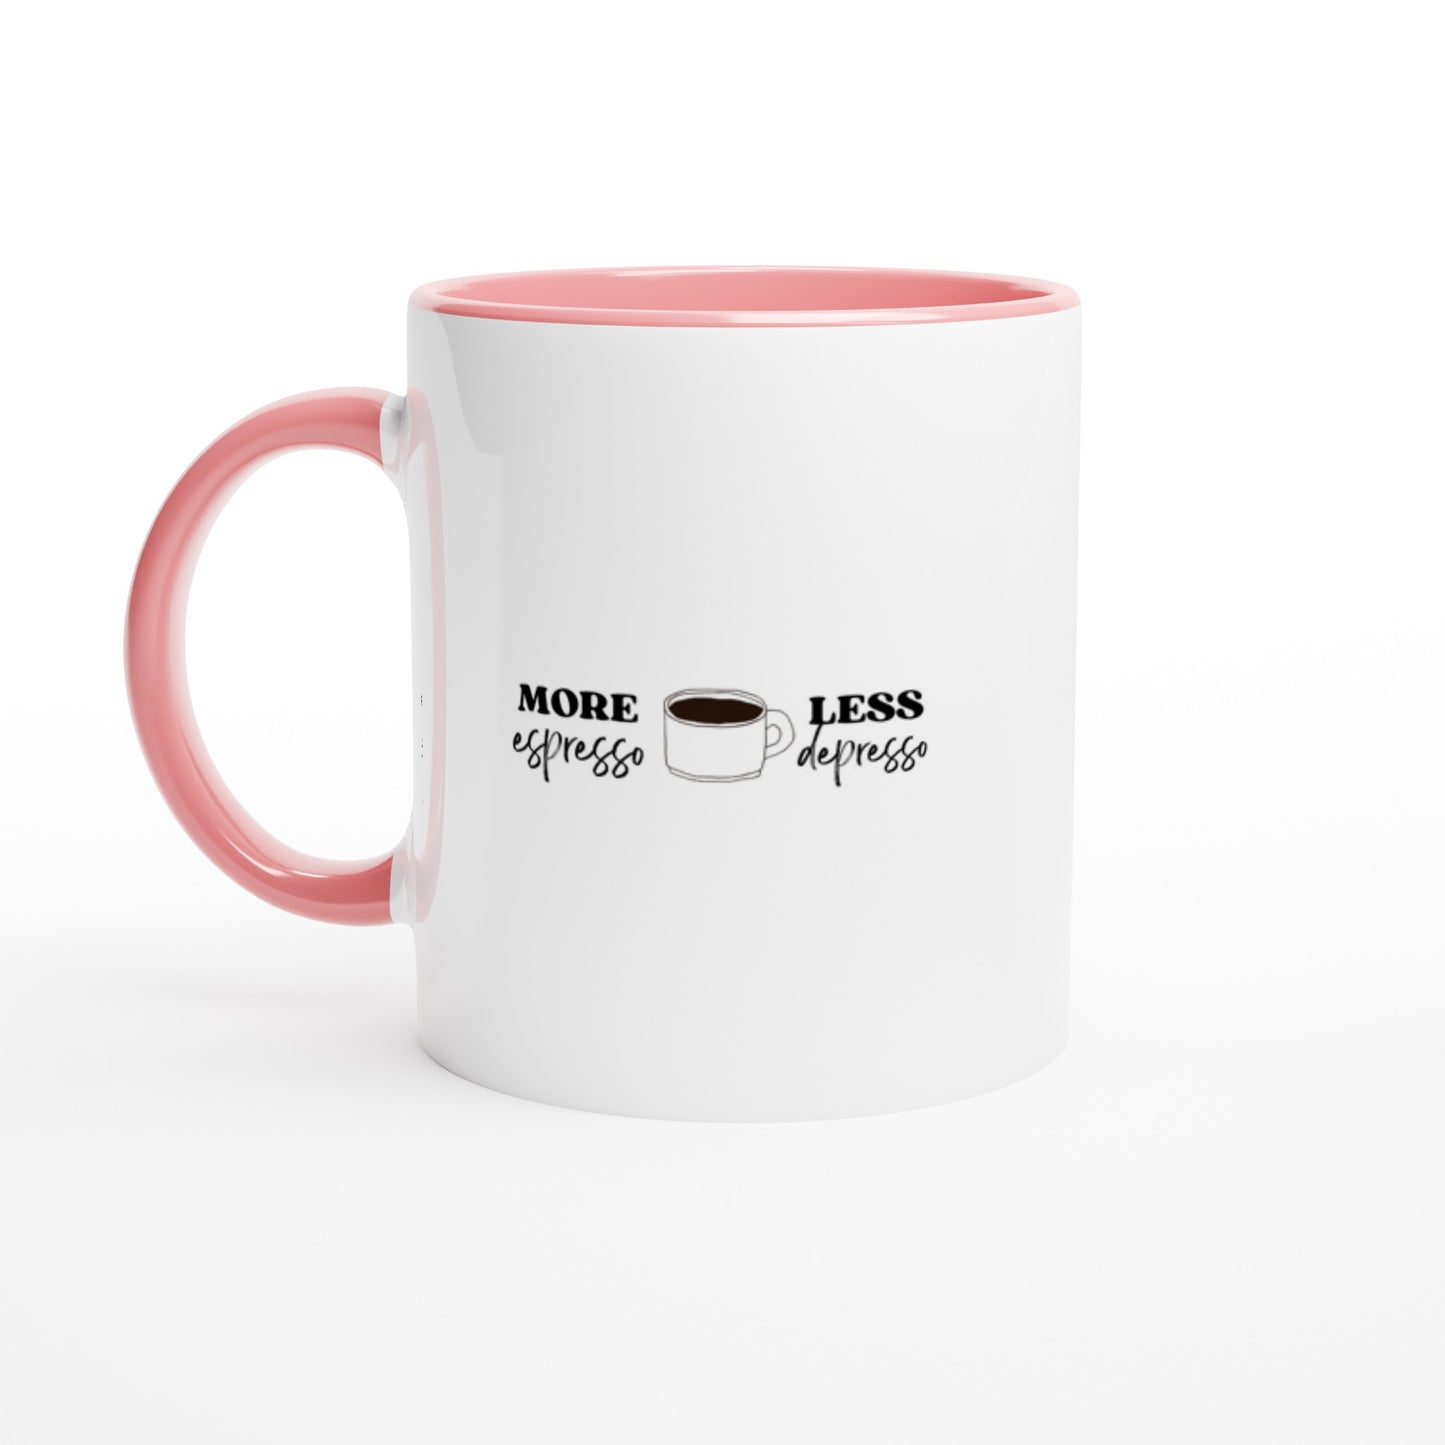 White 11oz Ceramic Mug with Color Inside - More Espresso Less Depresso